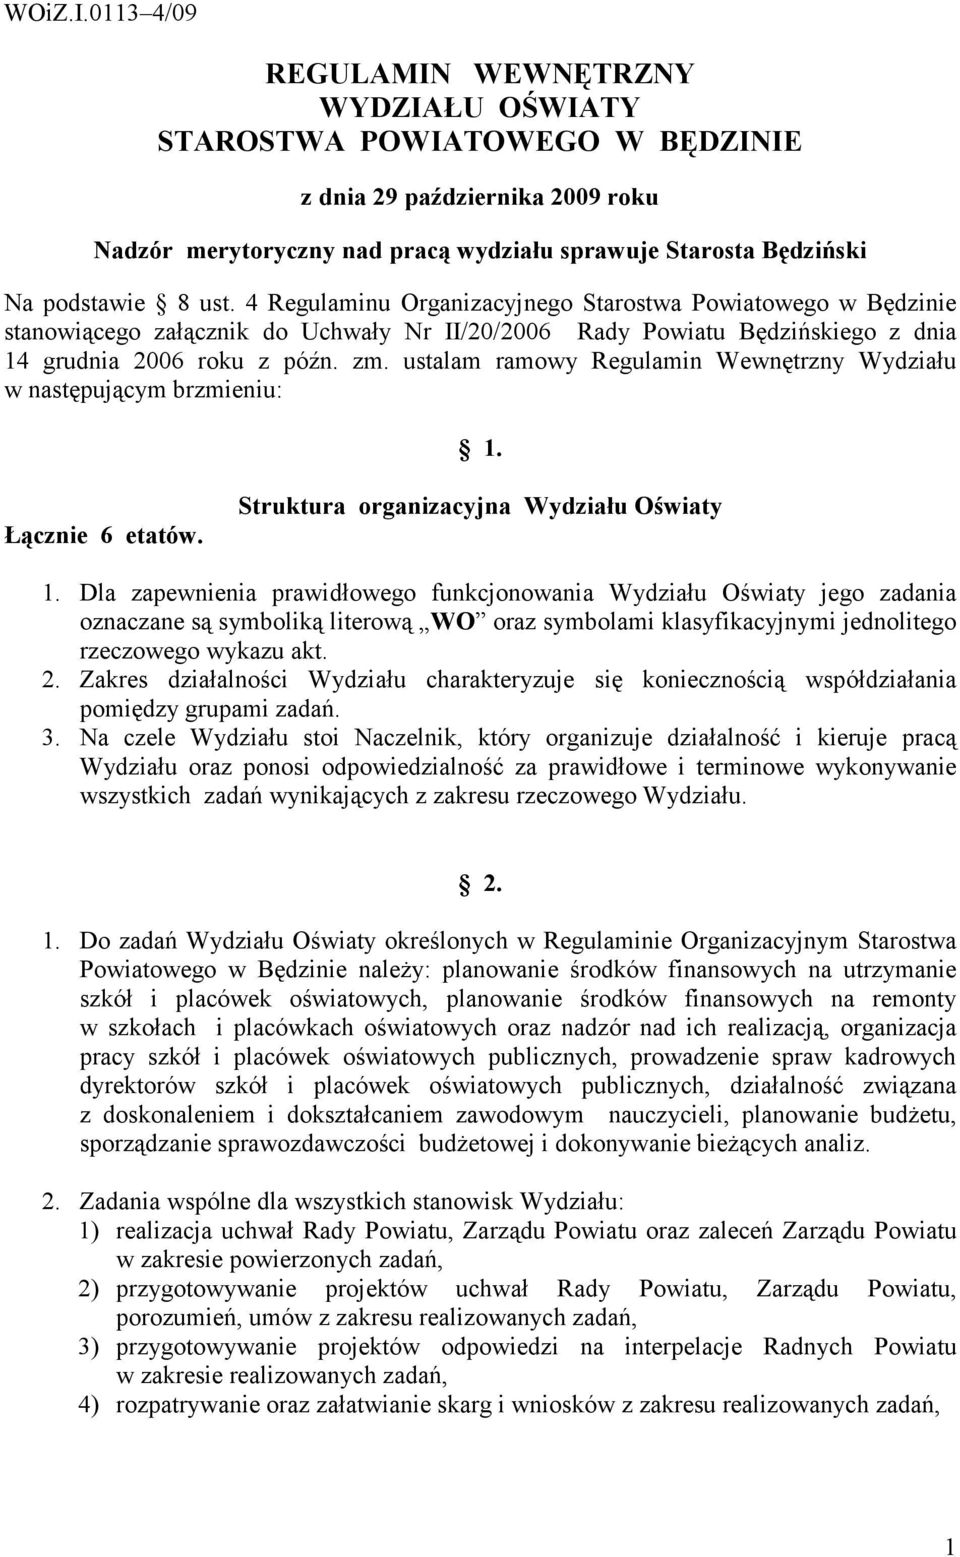 4 Regulaminu Organizacyjnego Starostwa Powiatowego w Będzinie stanowiącego załącznik do Uchwały Nr II/20/2006 Rady Powiatu Będzińskiego z dnia 14 grudnia 2006 roku z późn. zm.